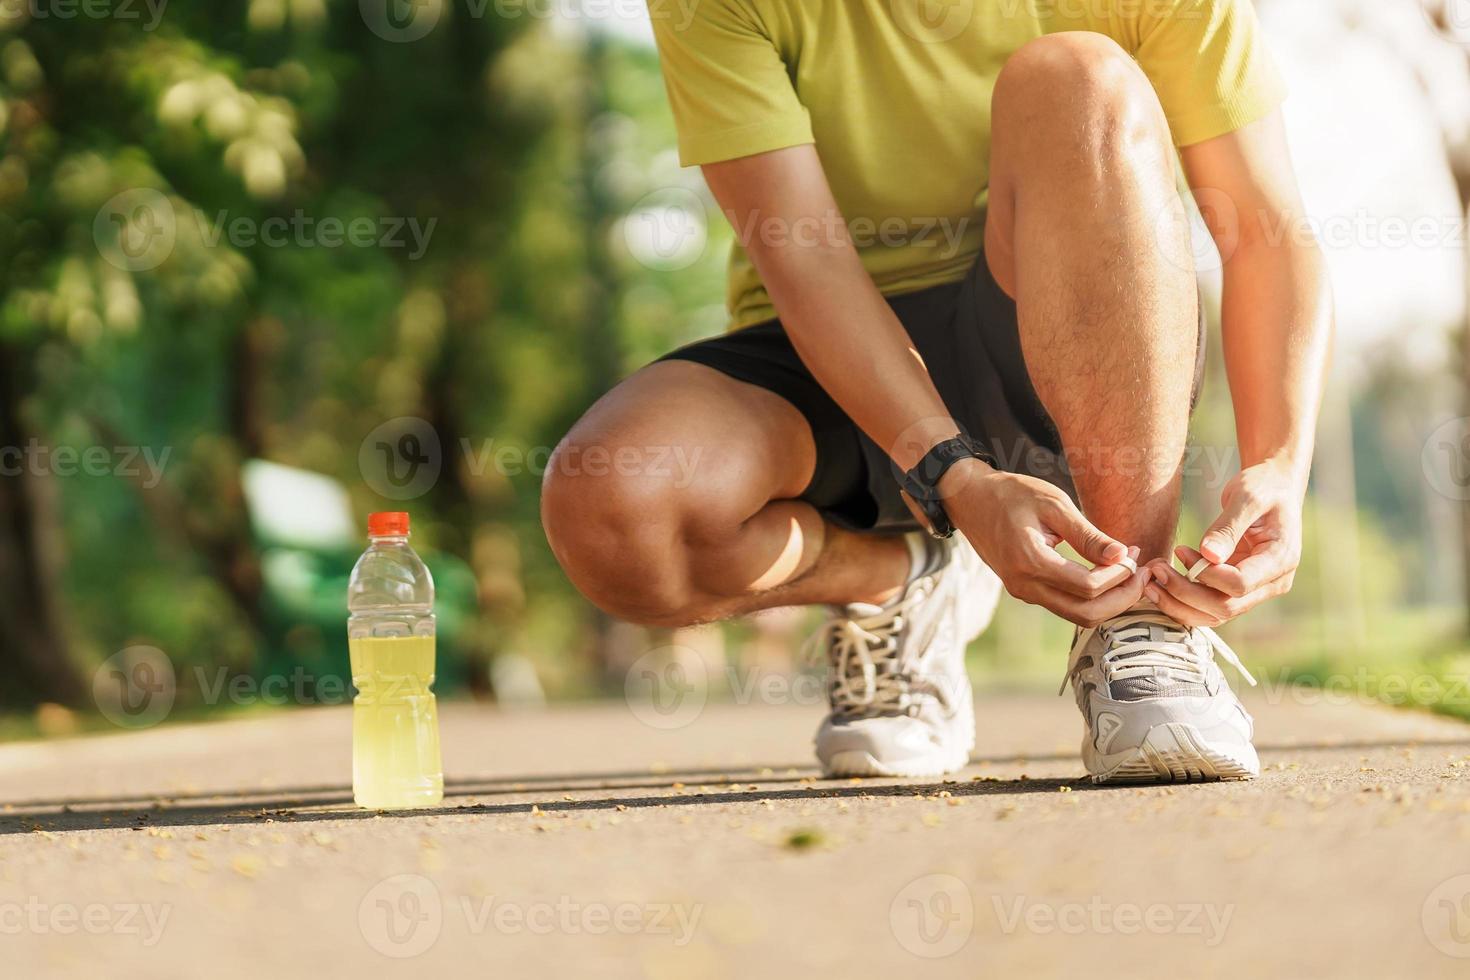 Jeune athlète homme attacher fonctionnement des chaussures avec énergie boisson eau, Masculin coureur prêt pour le jogging dehors, asiatique aptitude en marchant et exercice dans le parc Matin. bien-être, bien-être et sport concepts photo